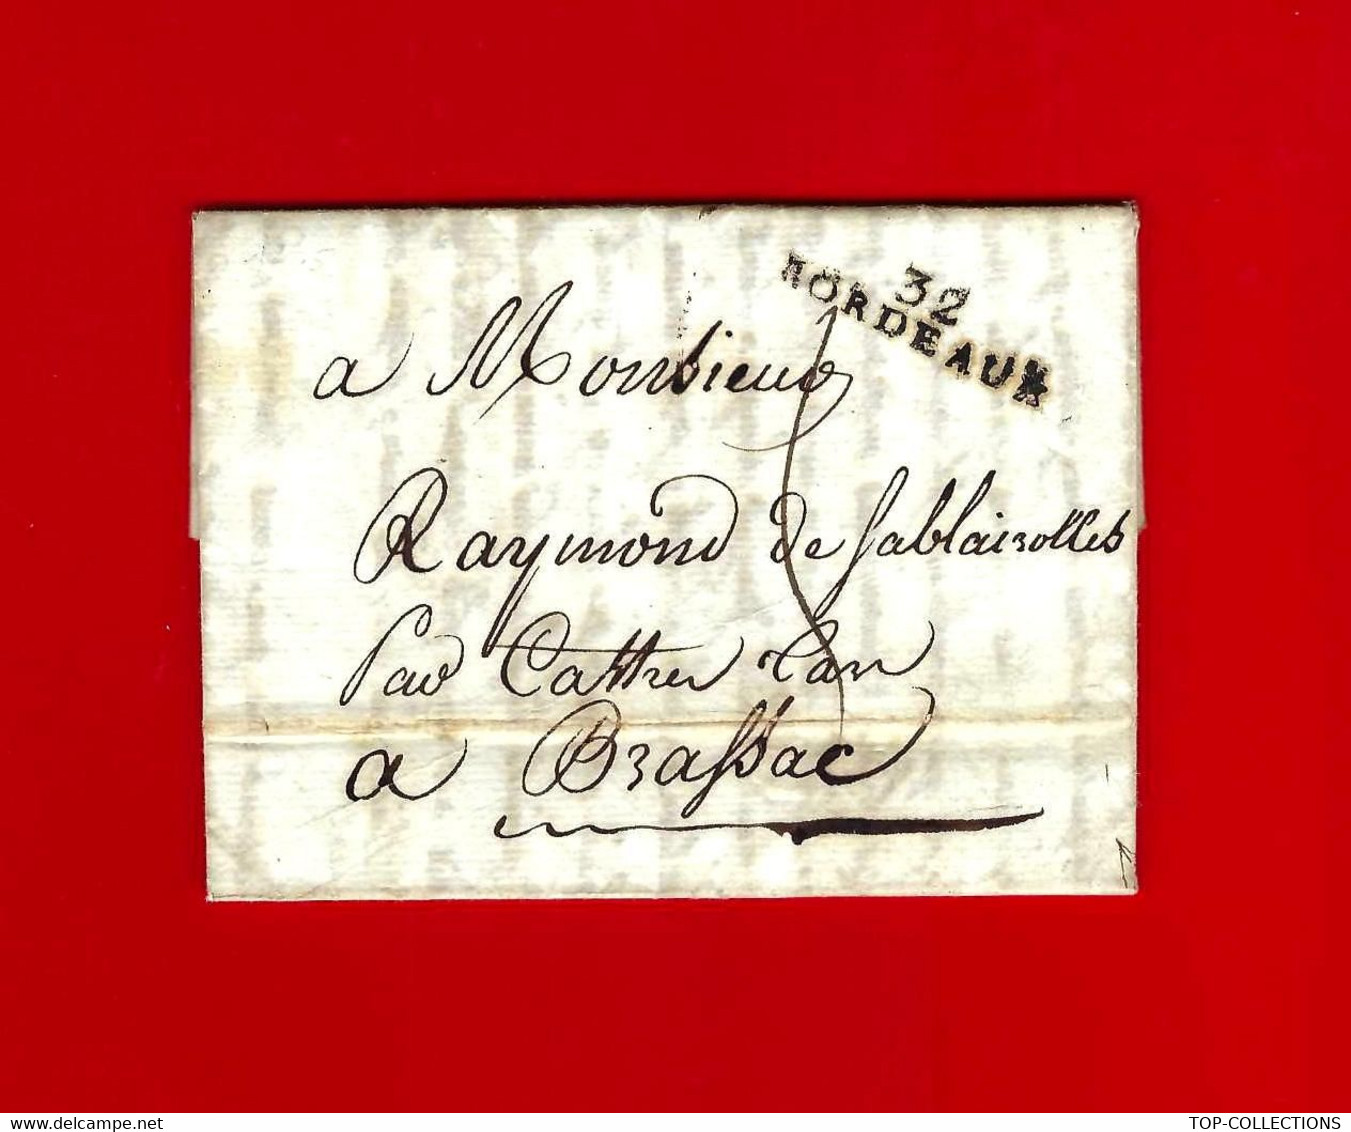 1805 de Mérignac près Bordeaux marque Postale «32 BORDEAUX"  = > Raymond à Sablayroles Castelnau de Brassac (Tarn)